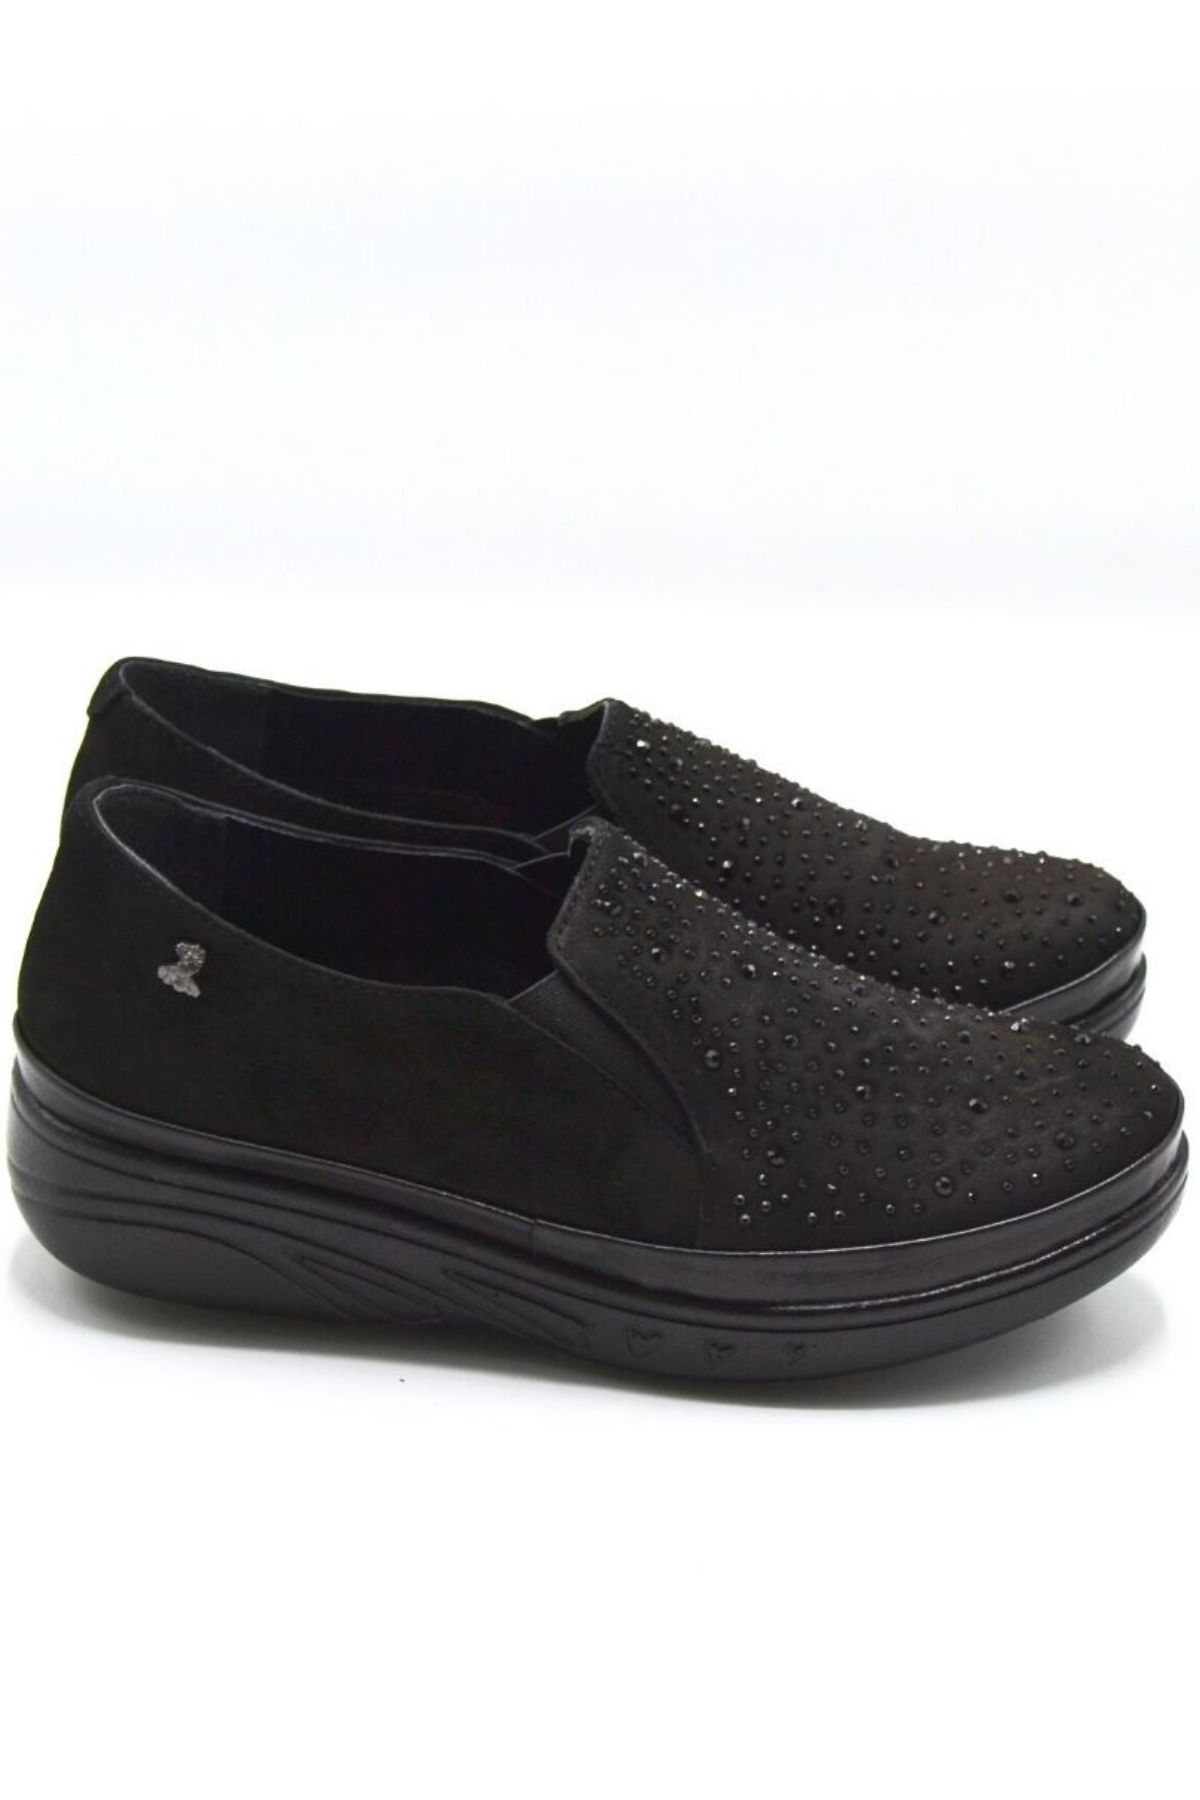 Kadın Airflow Deri Ayakkabı Siyah 1820504K - Thumbnail